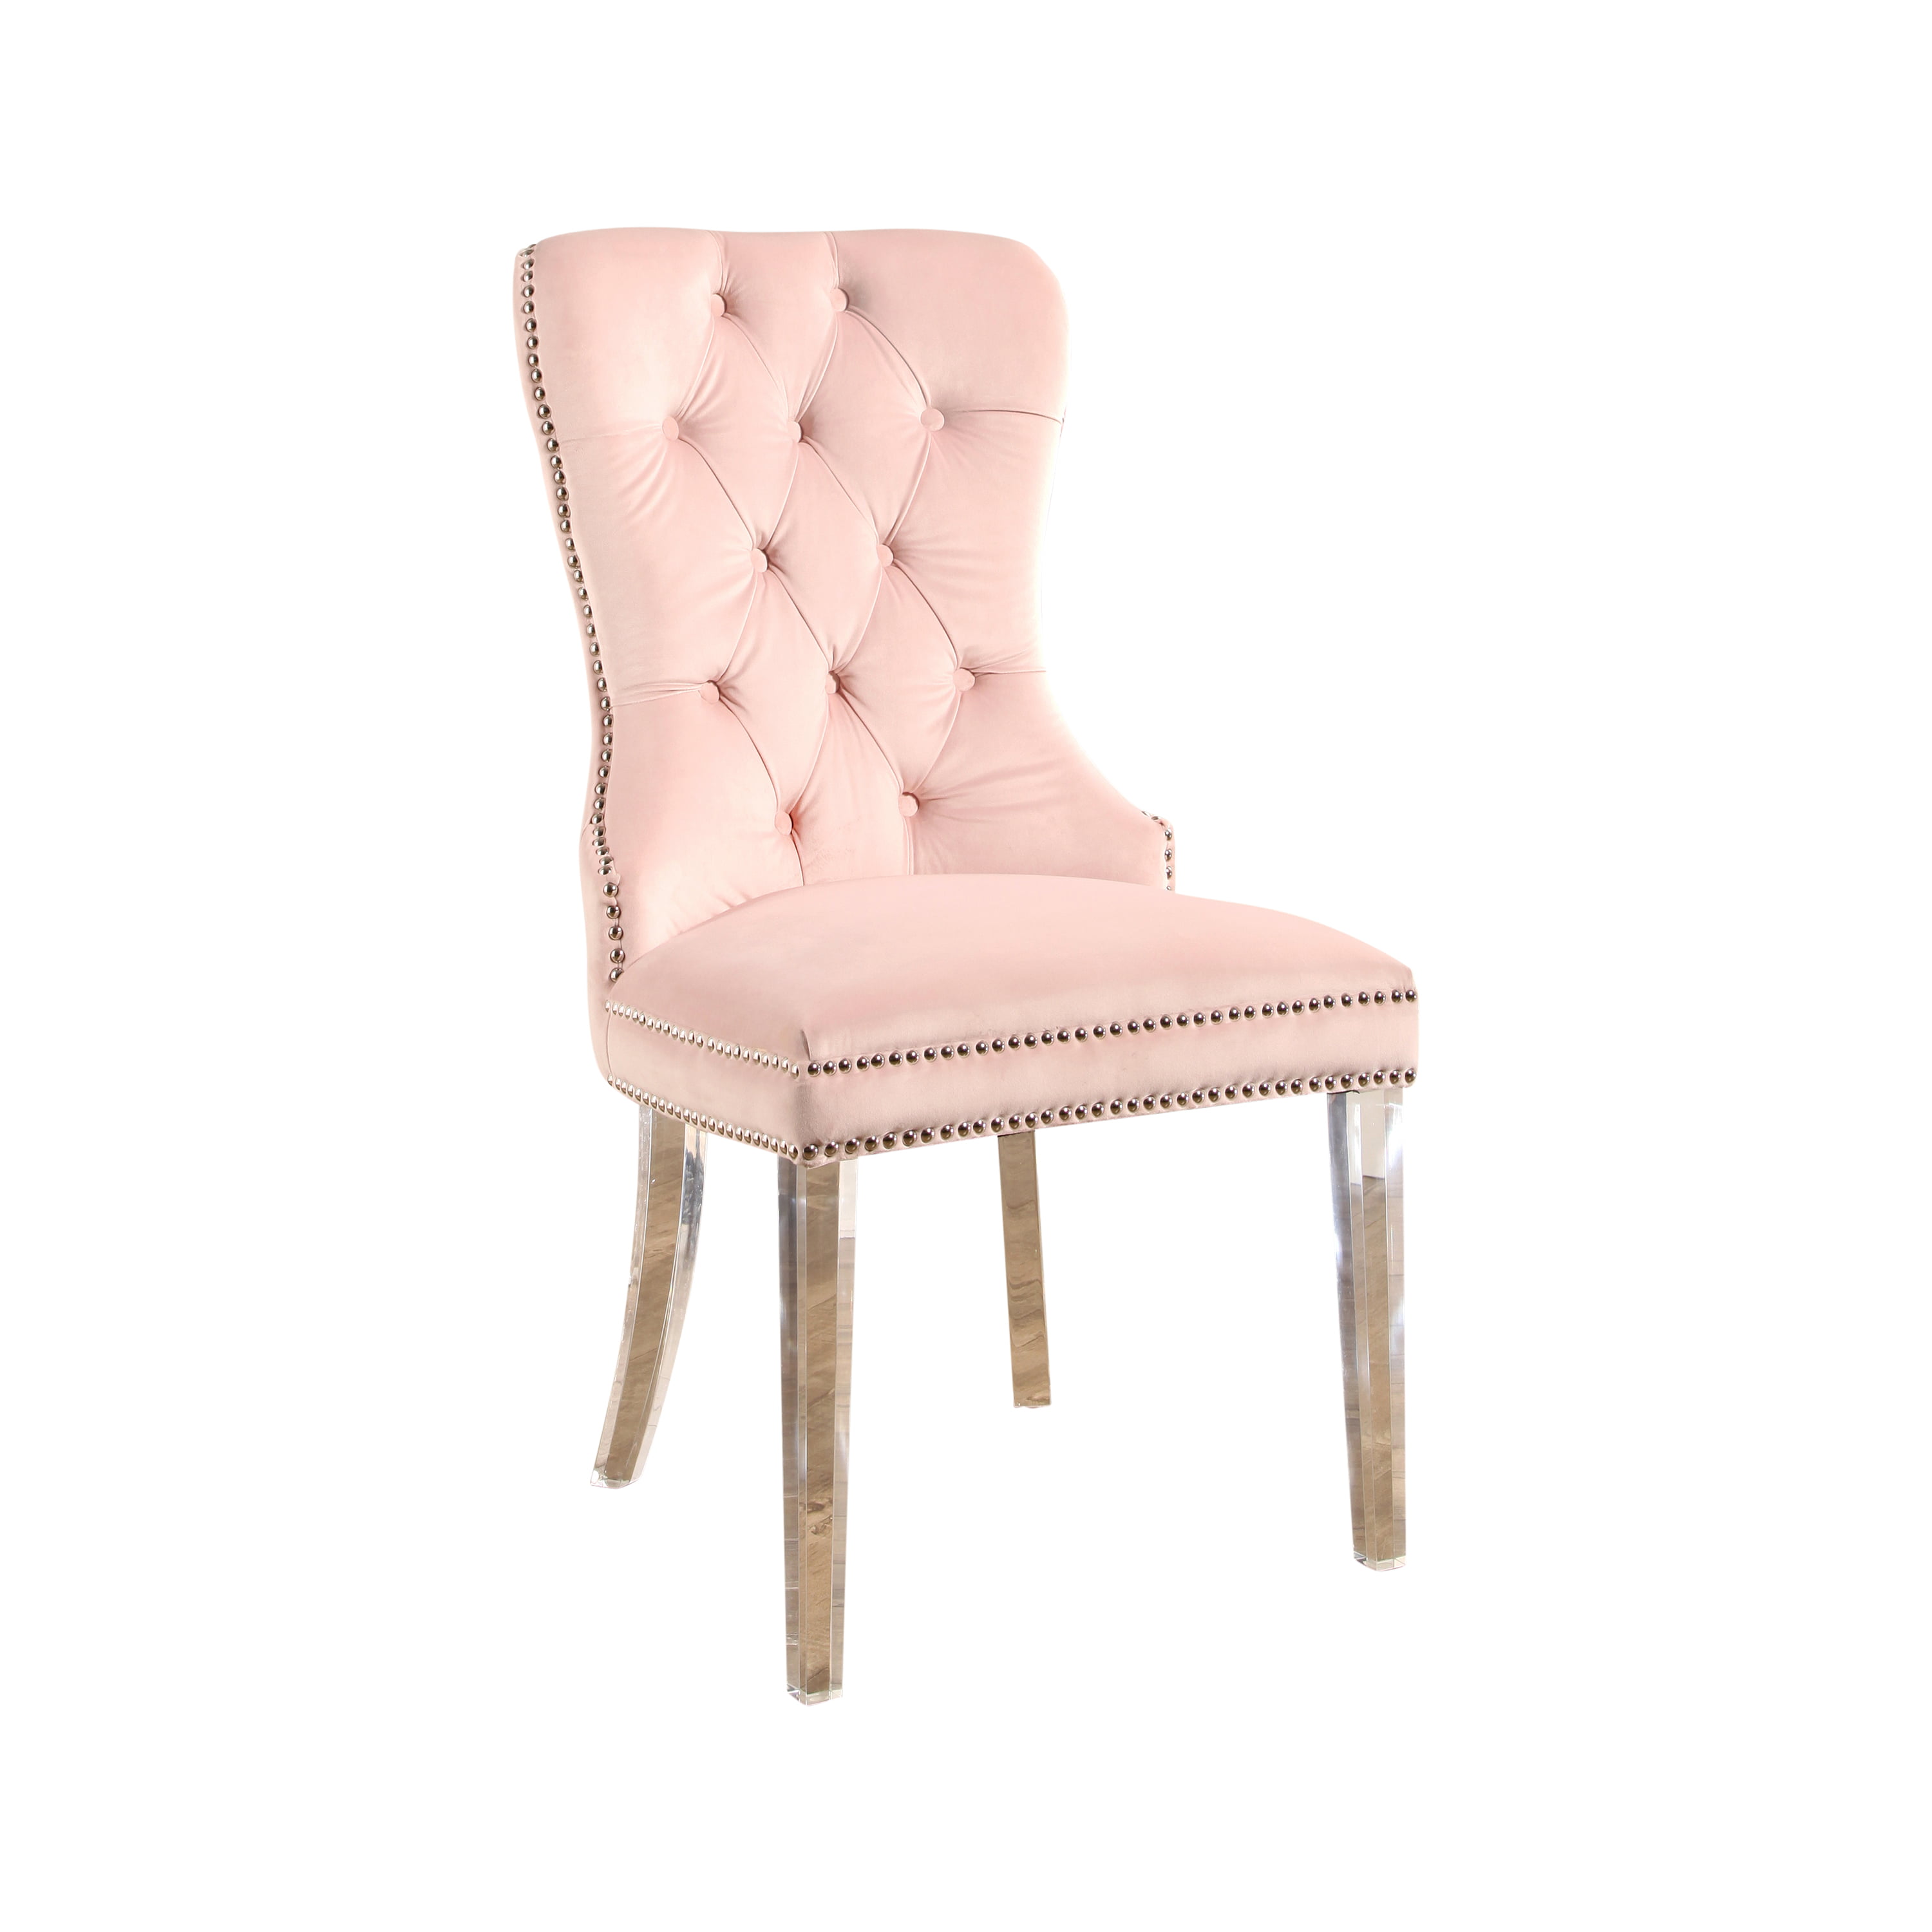 Devon and Claire Jayce Velvet Dining Chair, Blush Pink - Walmart.com